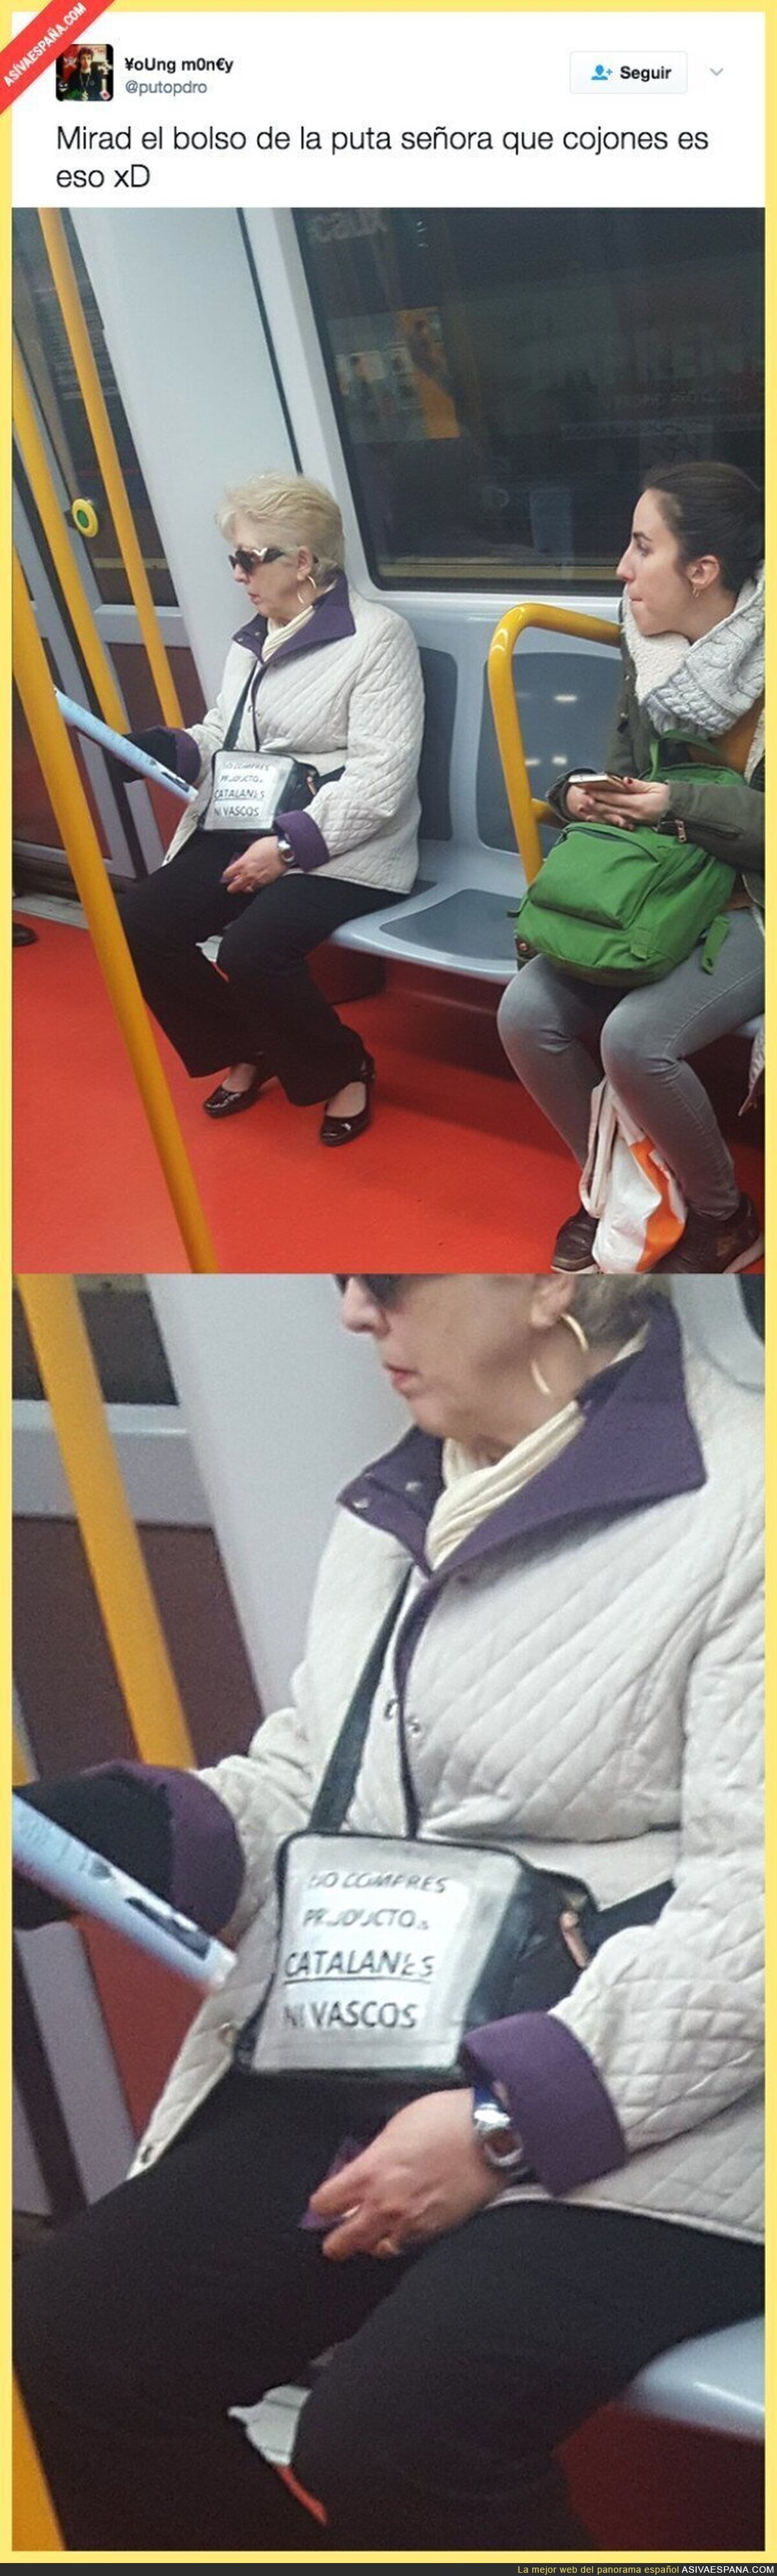 La señora más reivindicativa con este cartel en su bolso en el metro de Madrid